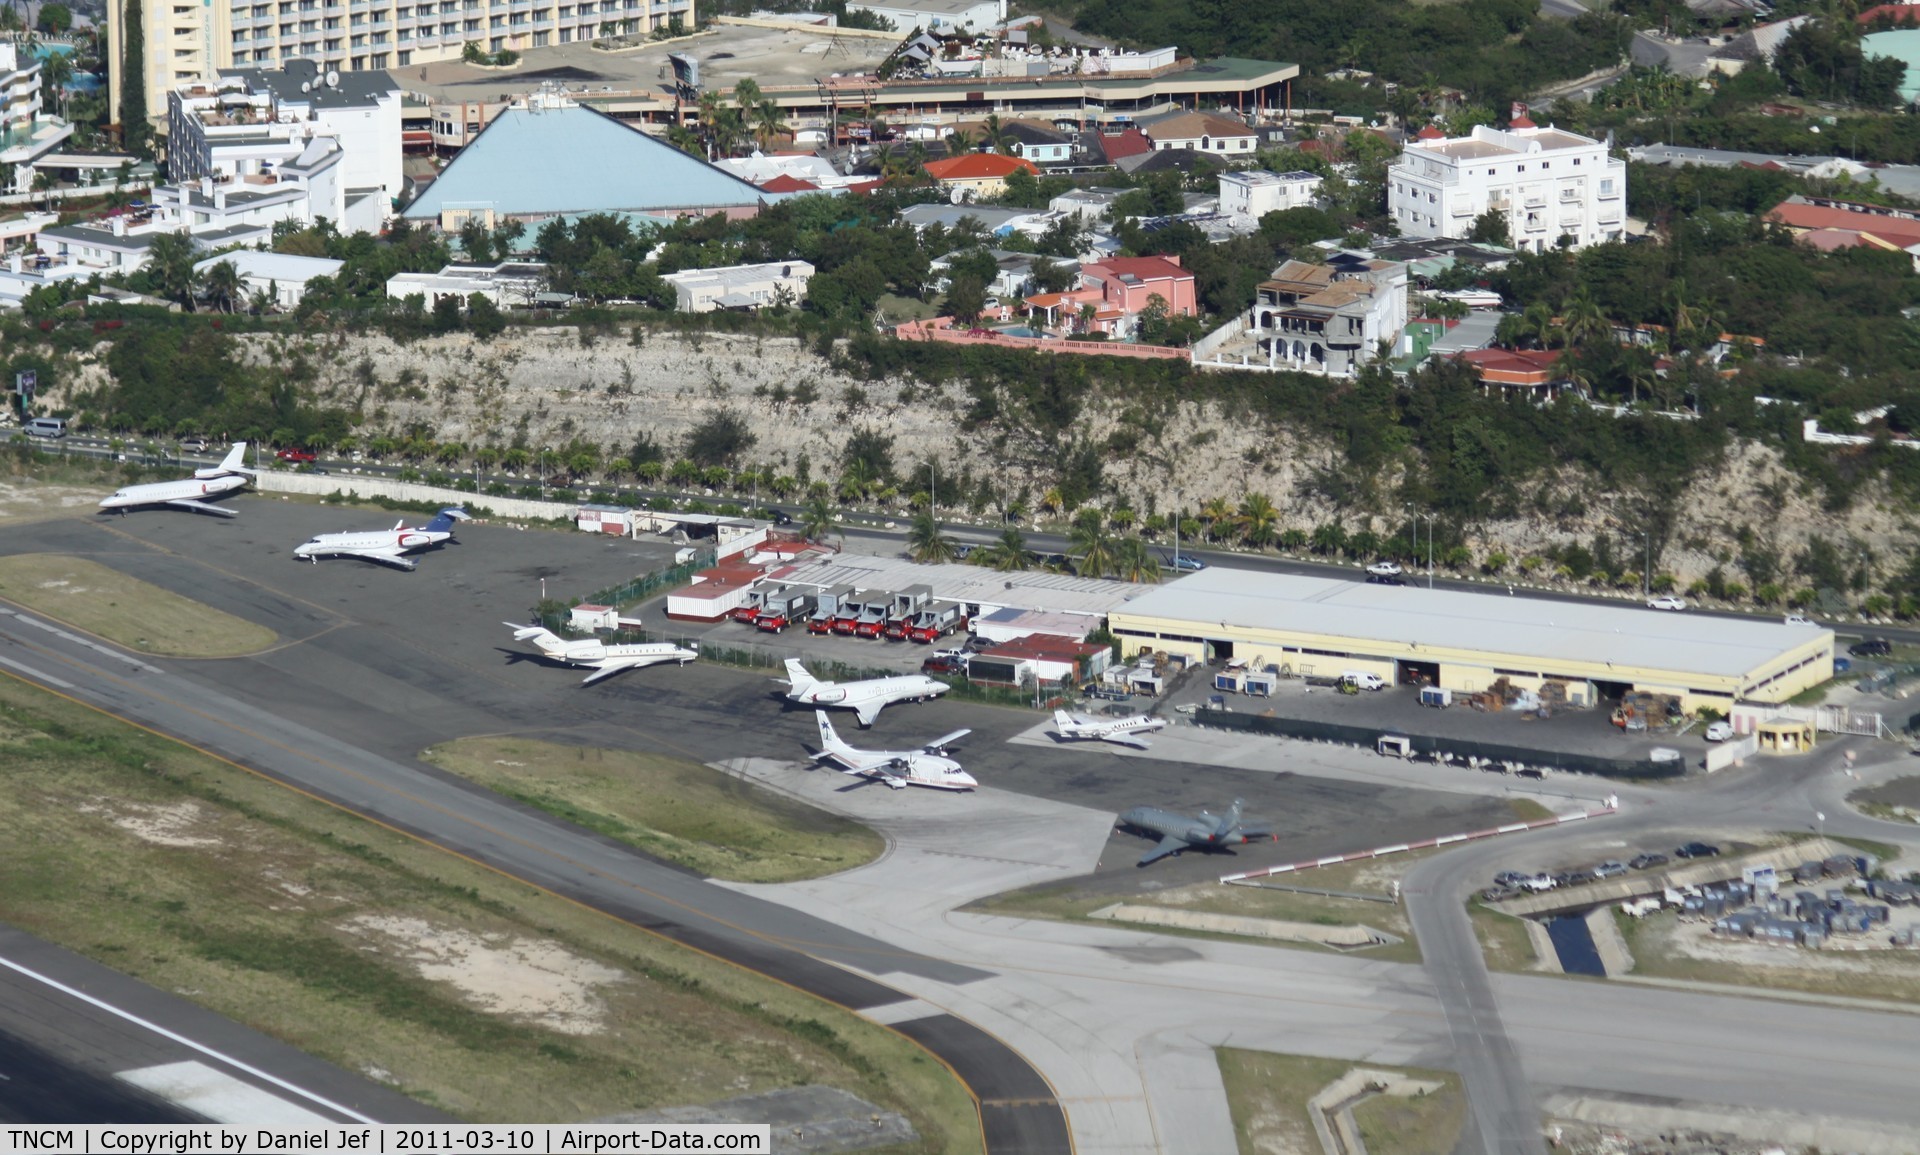 Princess Juliana International Airport, Philipsburg, Sint Maarten Netherlands Antilles (TNCM) - The cargo ramp at TNCM